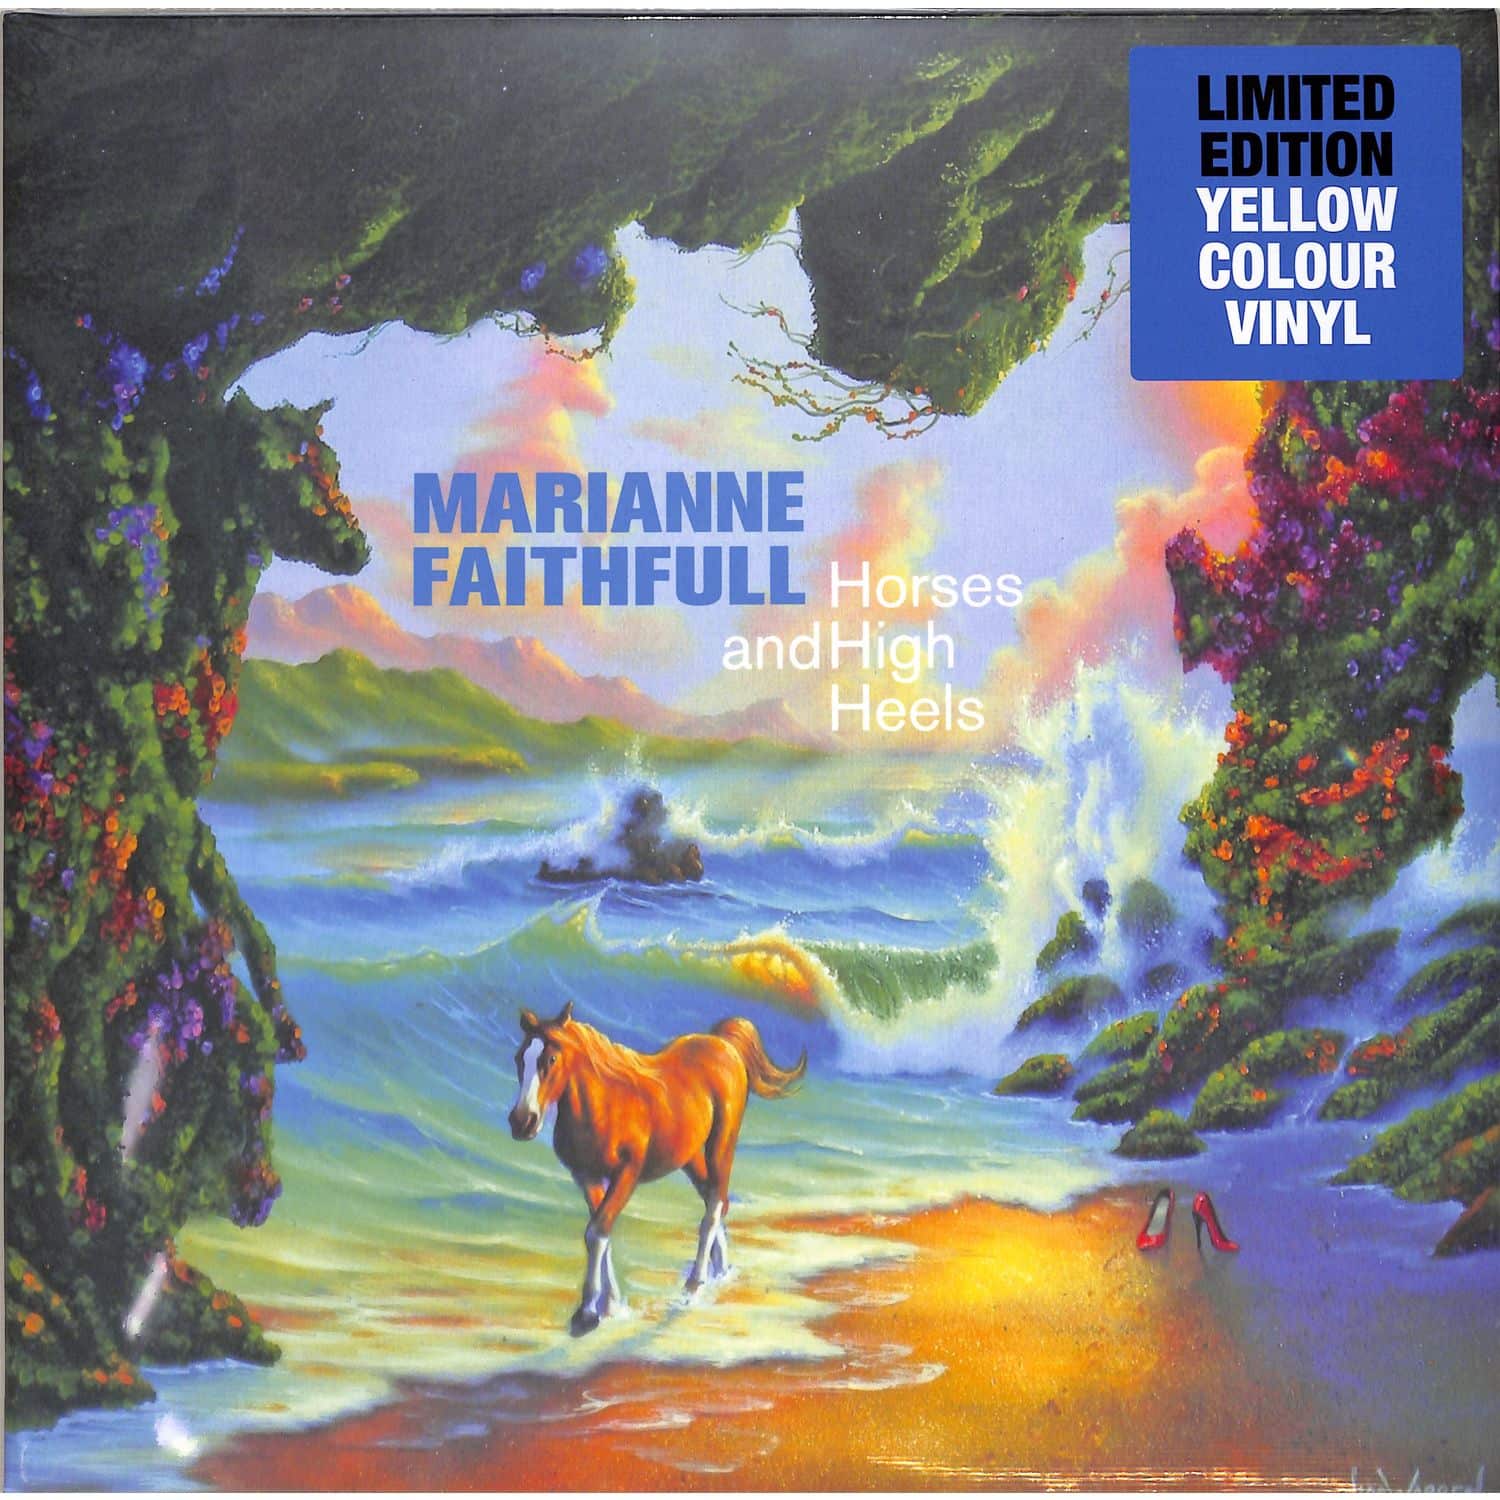  Marianne Faithfull - HORSES AND HIGH HEELS 